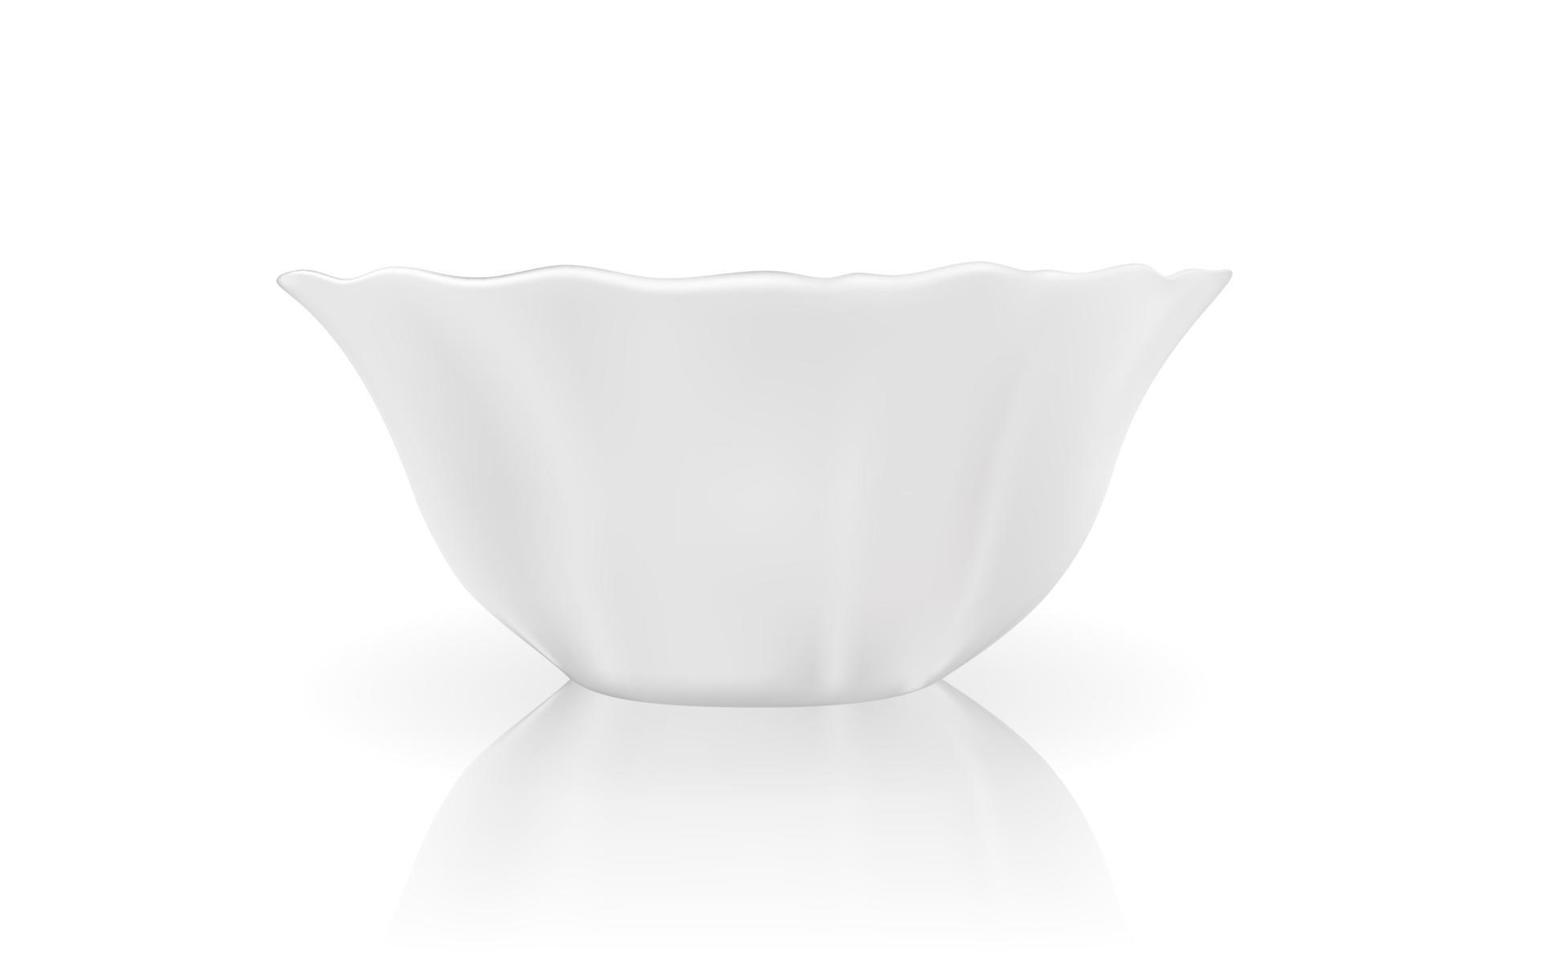 modèle 3d réaliste de plat blanc. illustration vectorielle vecteur